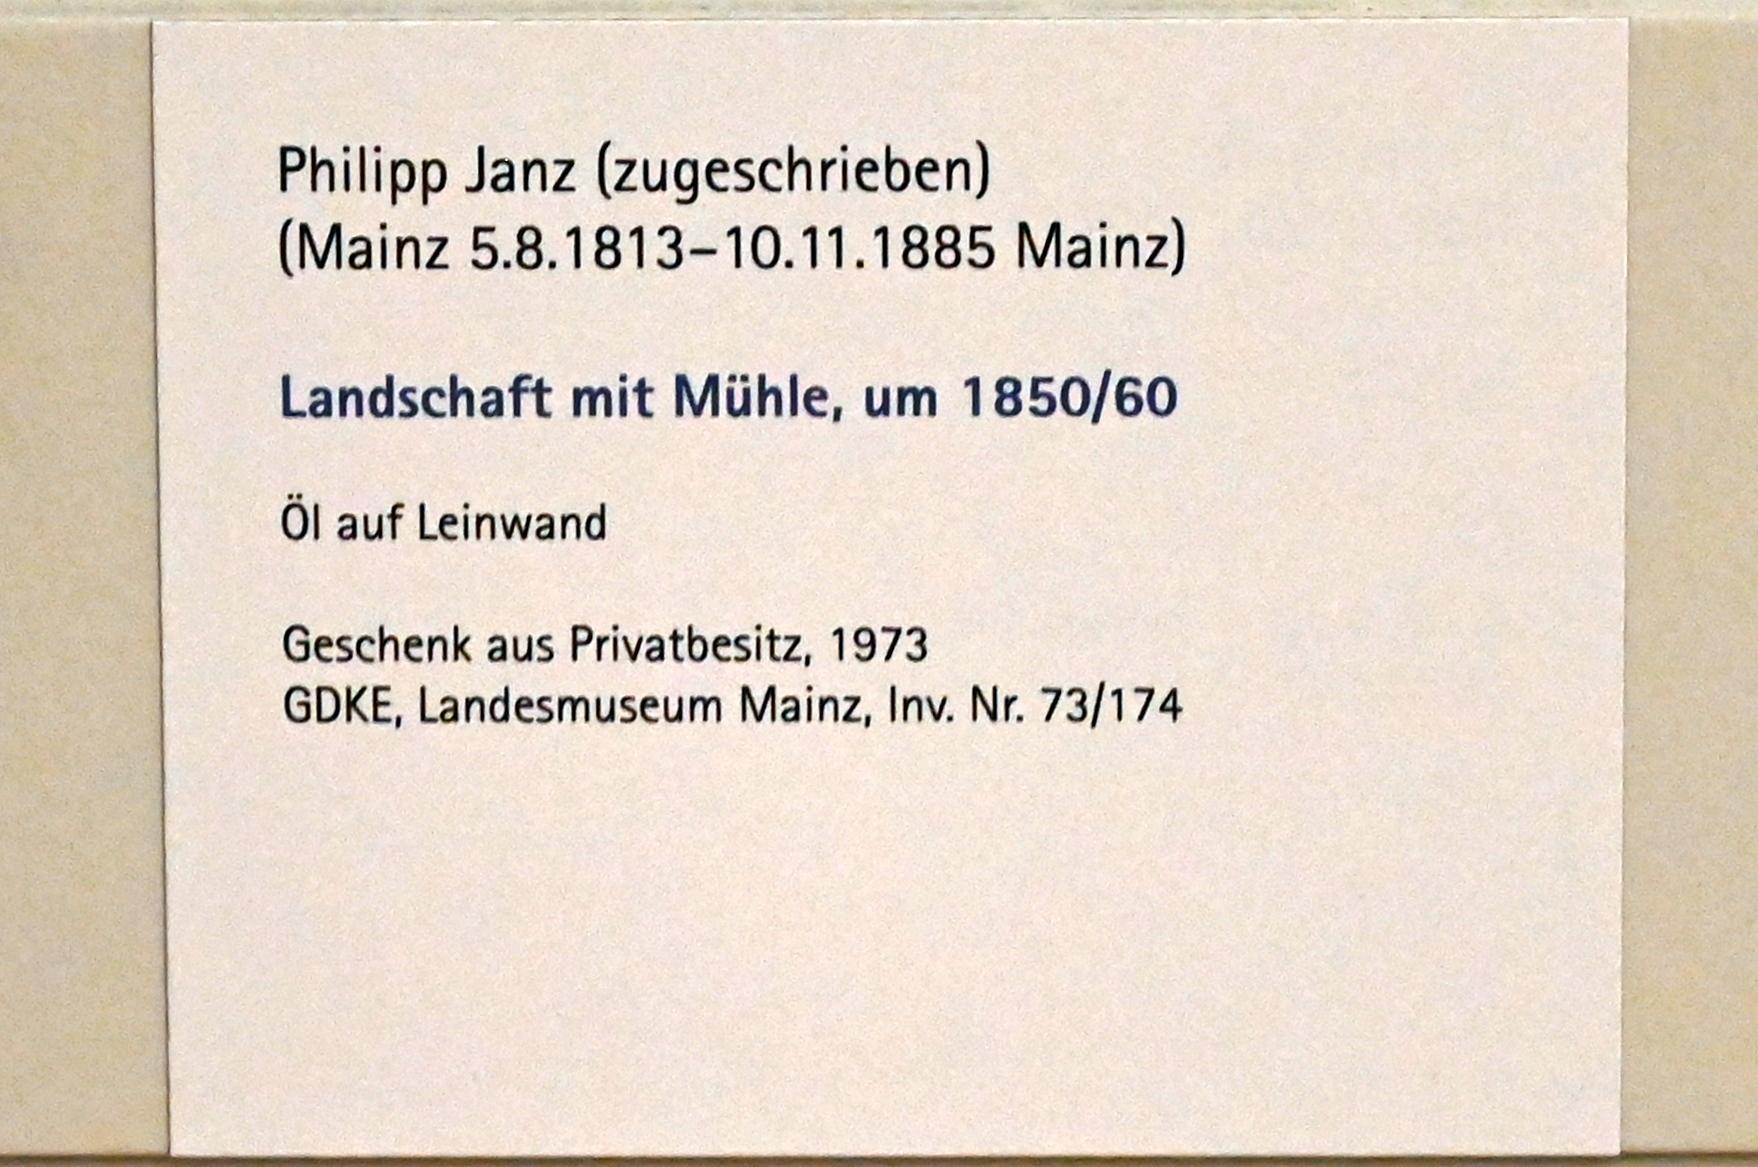 Philipp Janz (1840–1855), Landschaft mit Mühle, Mainz, Landesmuseum, Graphische Sammlung, um 1850–1860, Bild 2/2